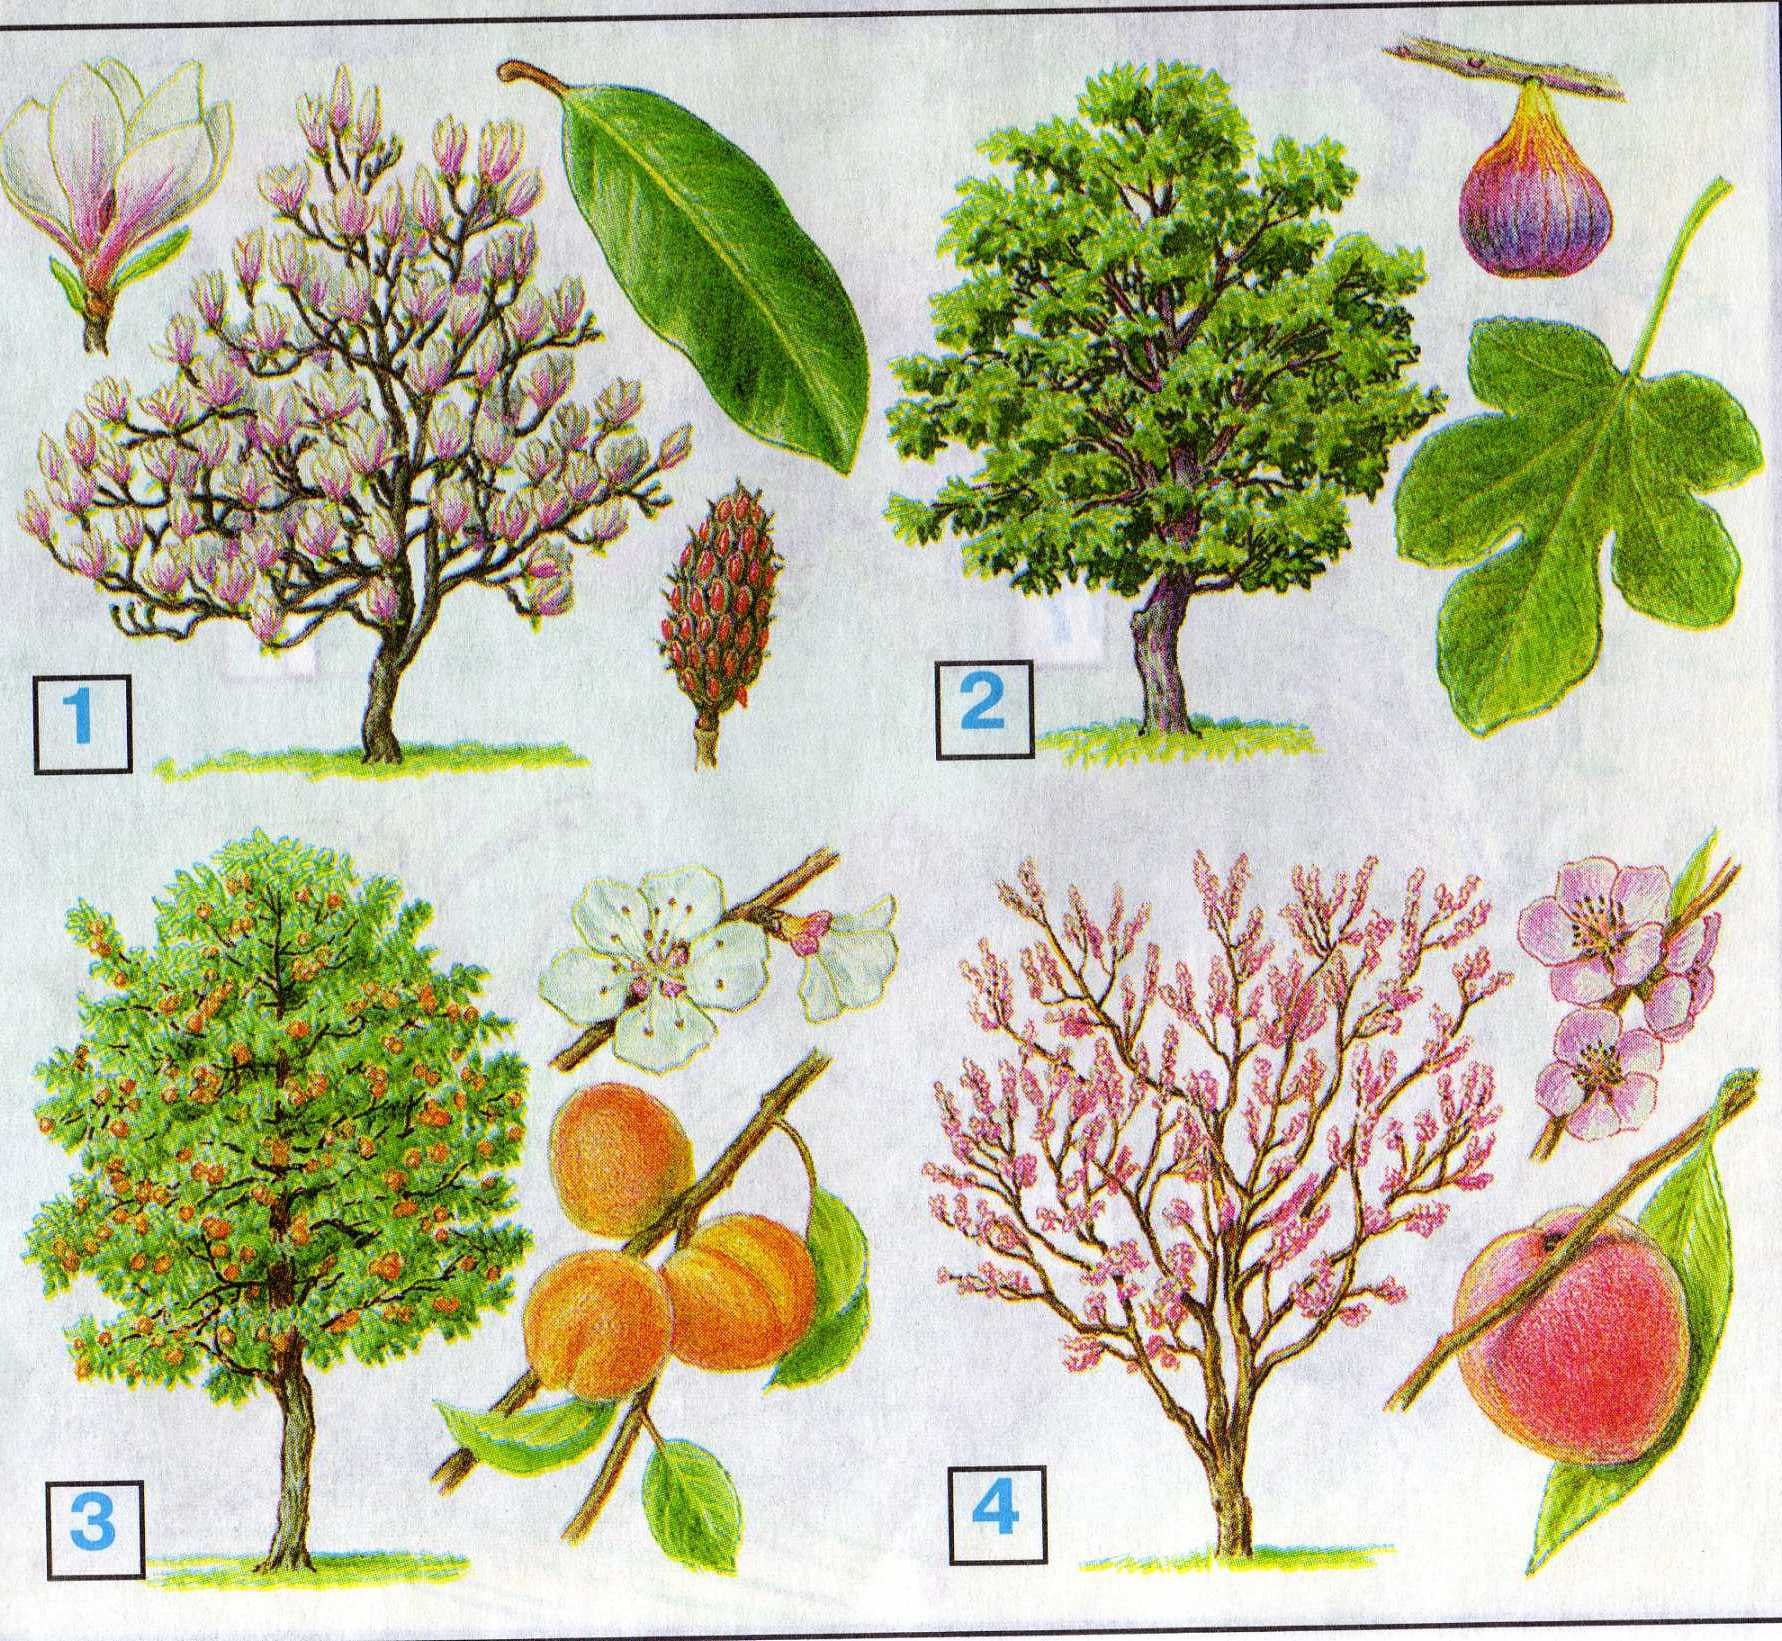 Название плодовых деревьев и кустарников. Деревья и плоды. Дерево с небольшими плодами. Плодовые деревья для дошкольников. Плоды деревьев для детей.